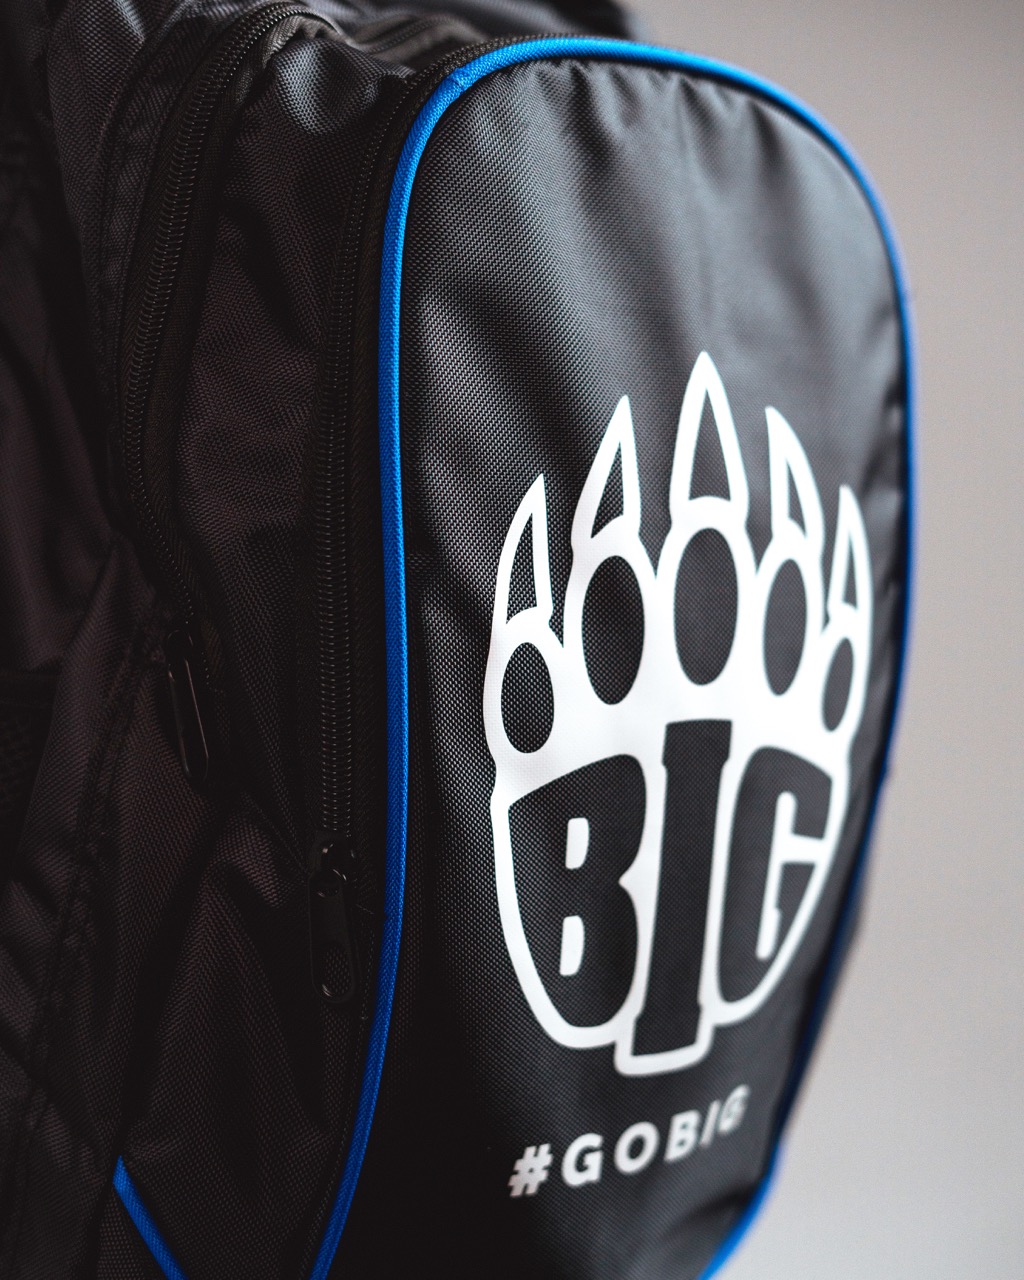 BIG Backpack 2023